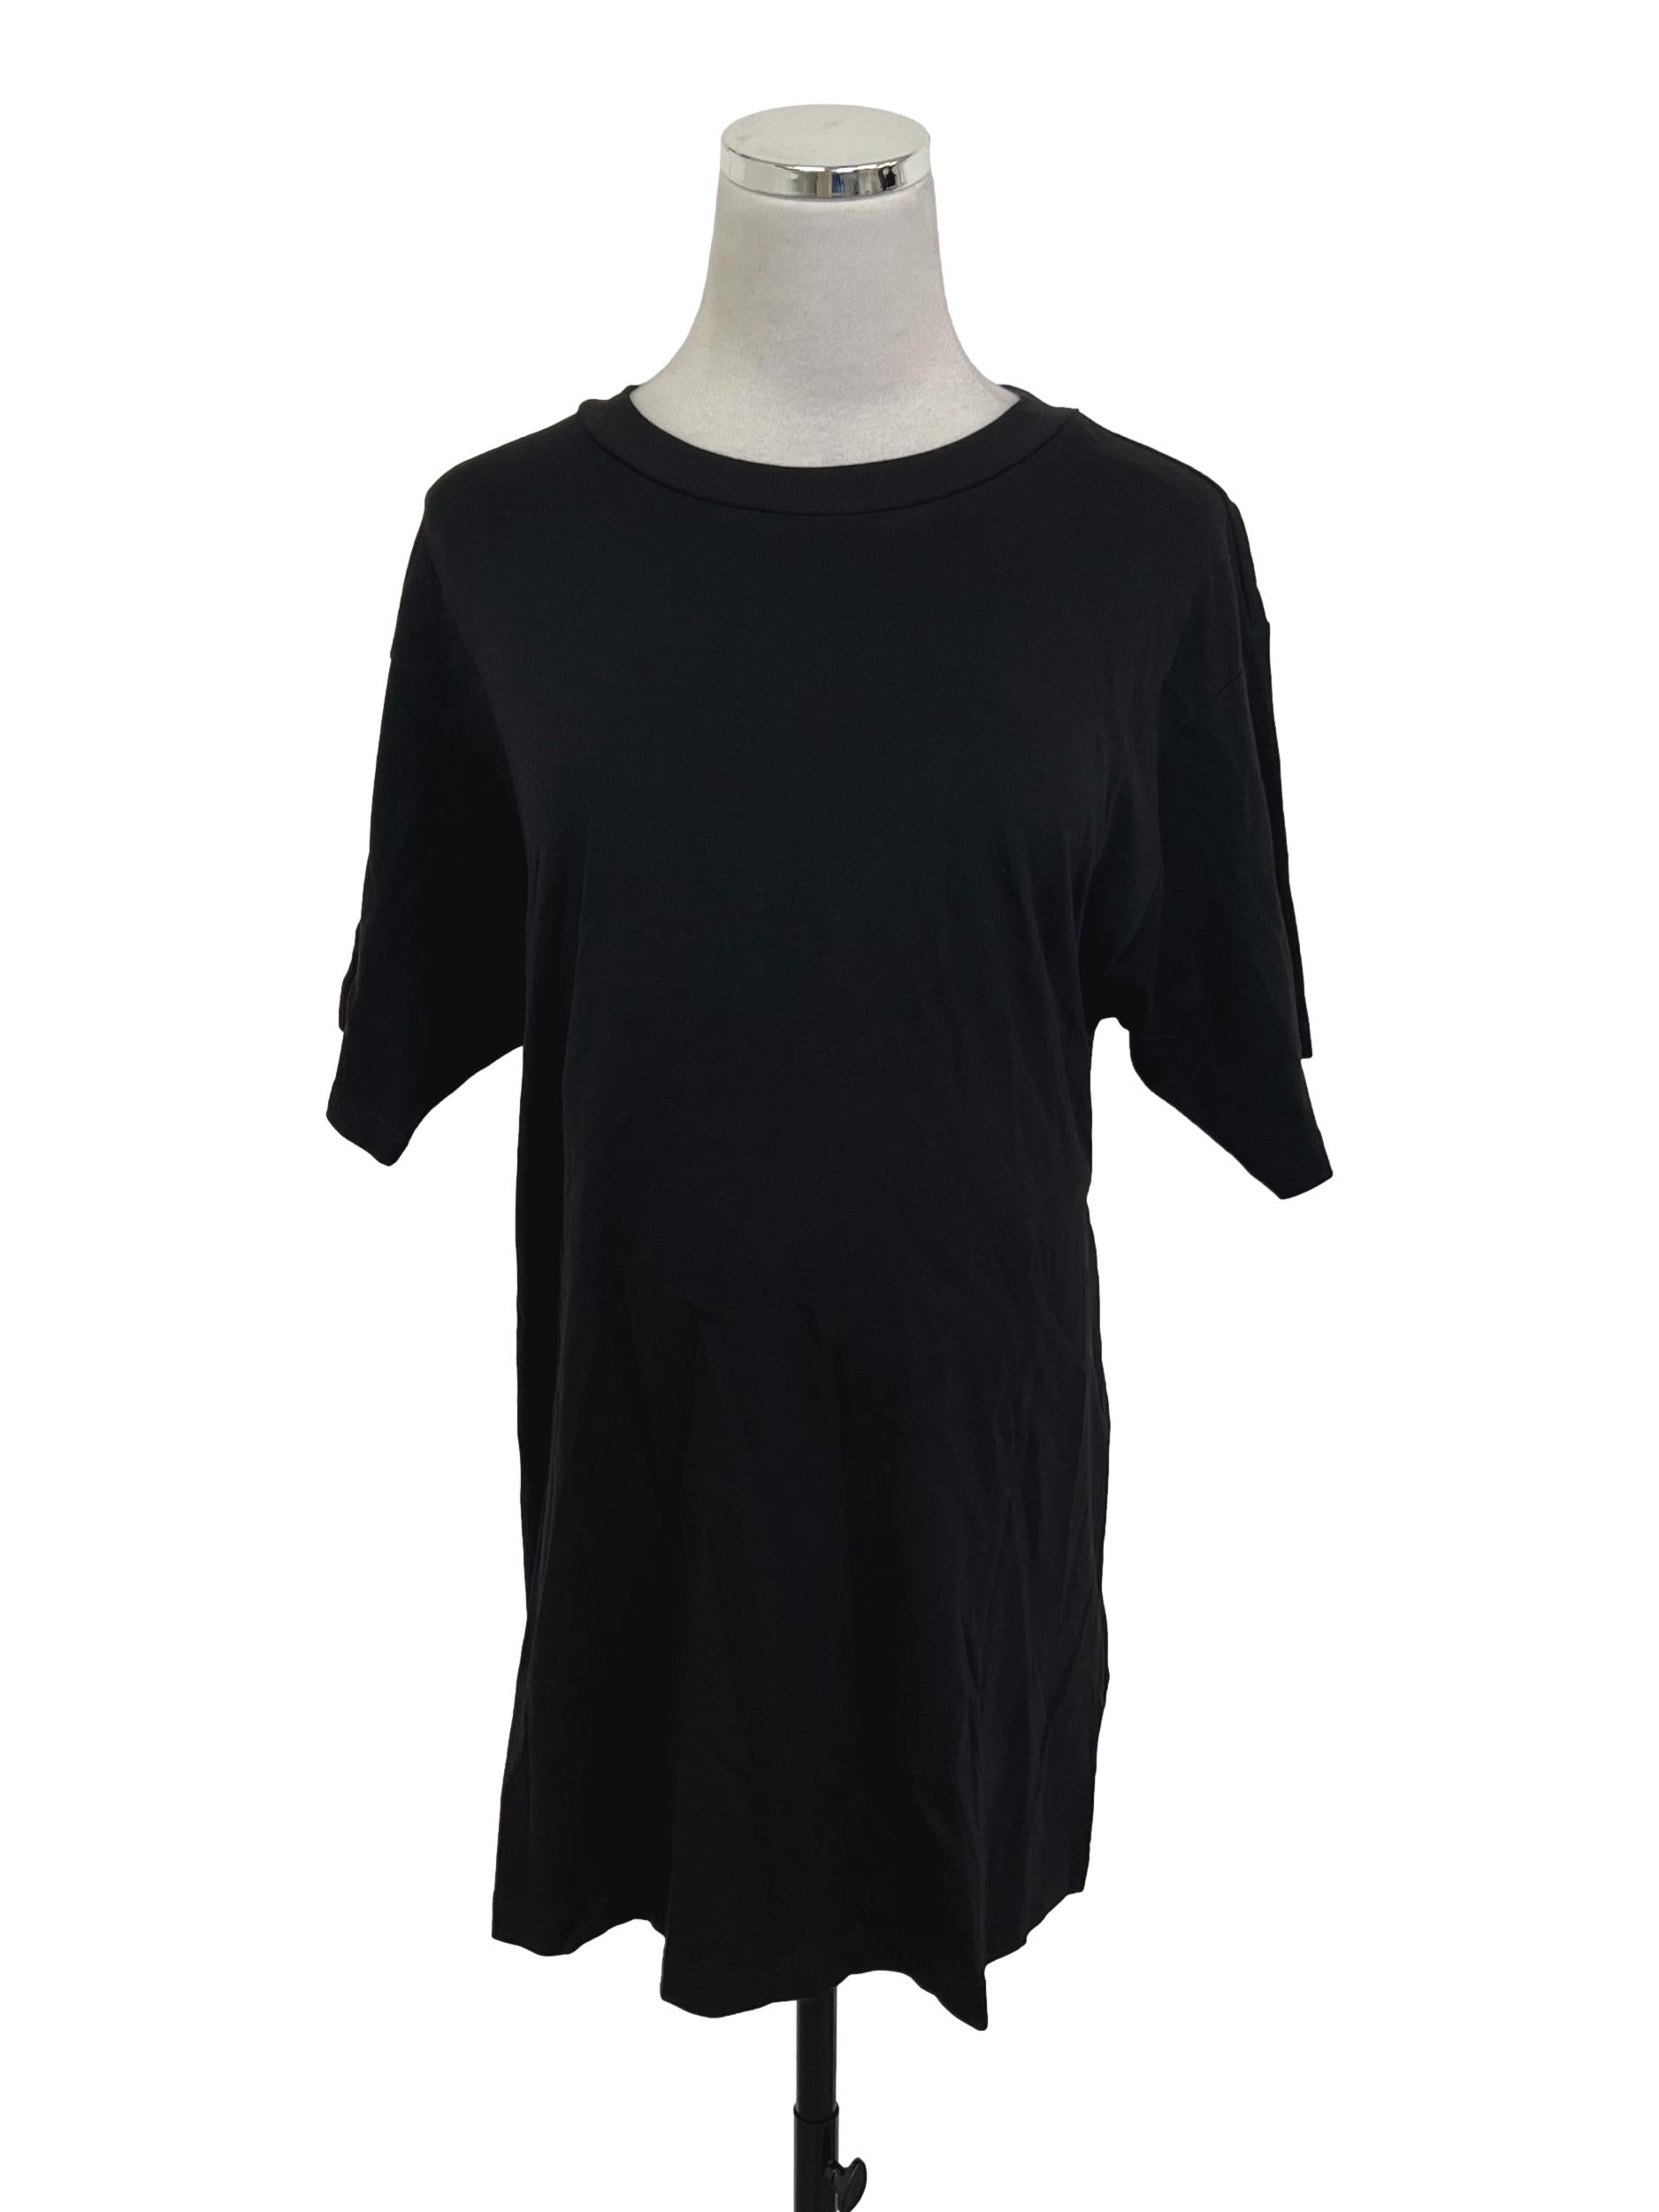 Midnight Black Short Sleeved T-Shirt